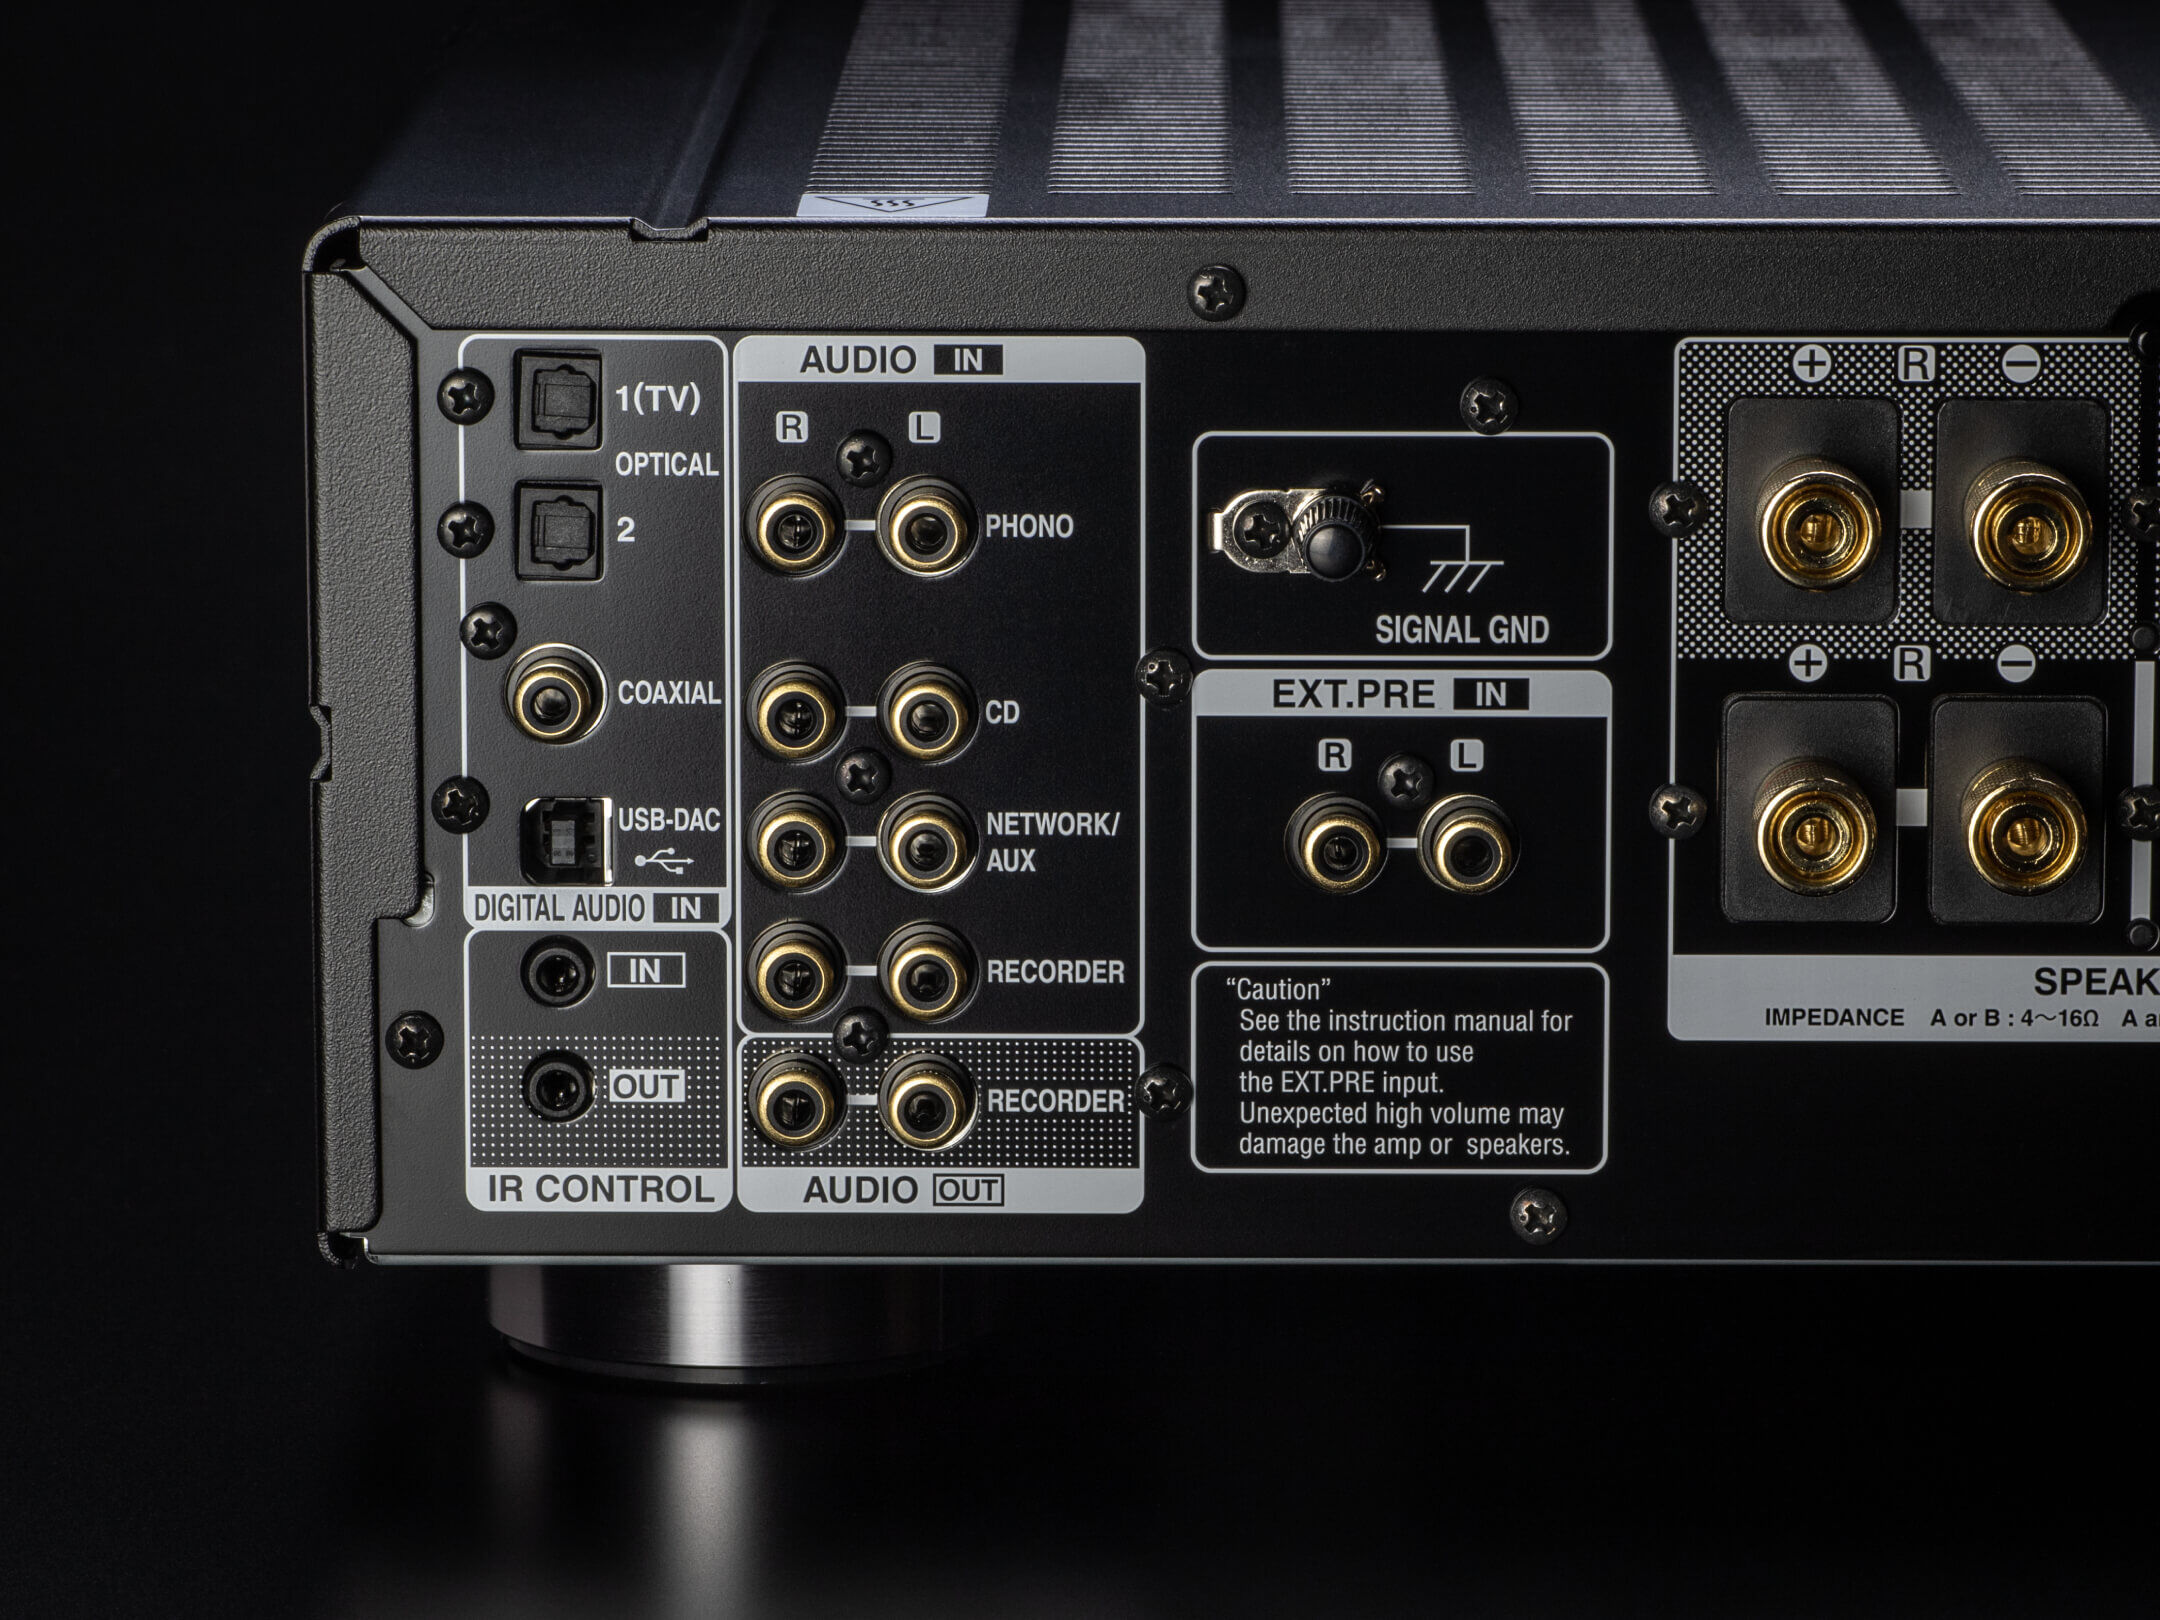 PMA-1700NE - 2 Ch. 140W integrated Amplifier with USB-DAC | Denon - US